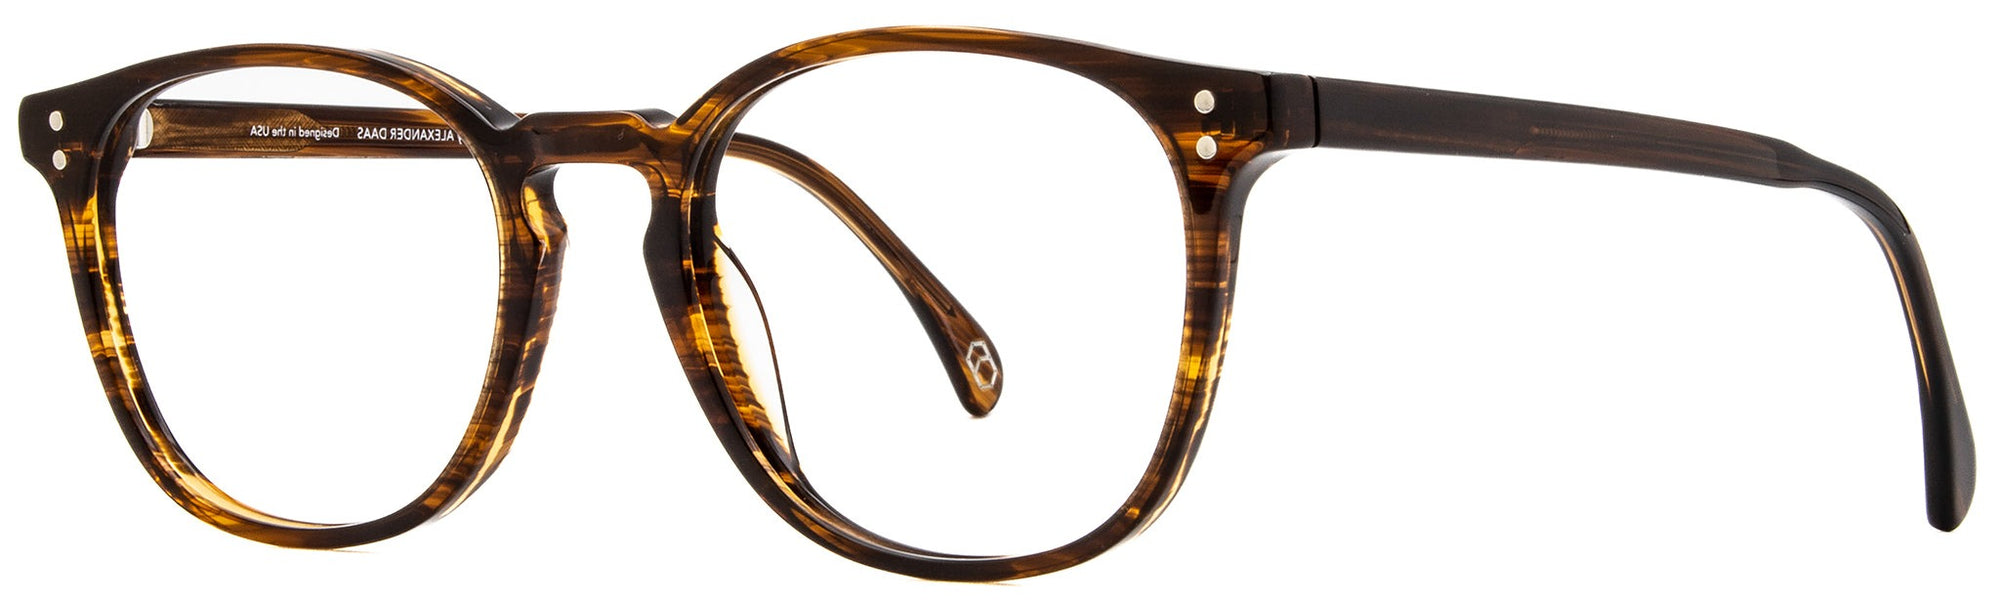 Alexander Daas - Milan Eyeglasses - Striated Tortoise - Side View